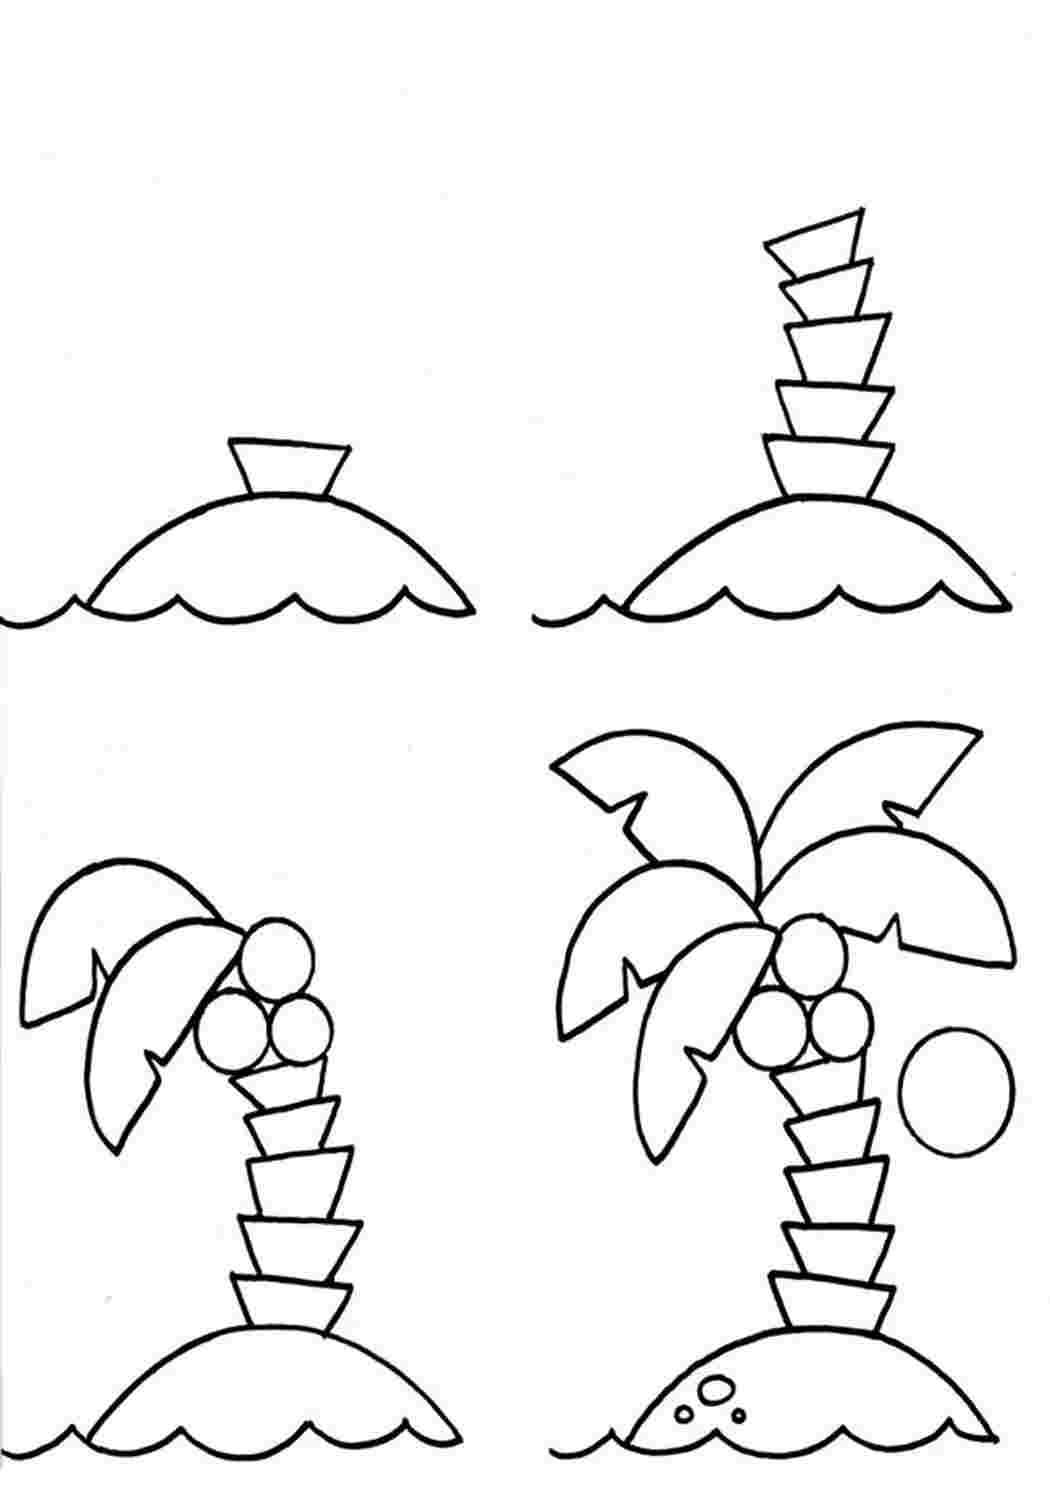 Поэтапное рисование пальмы для детей